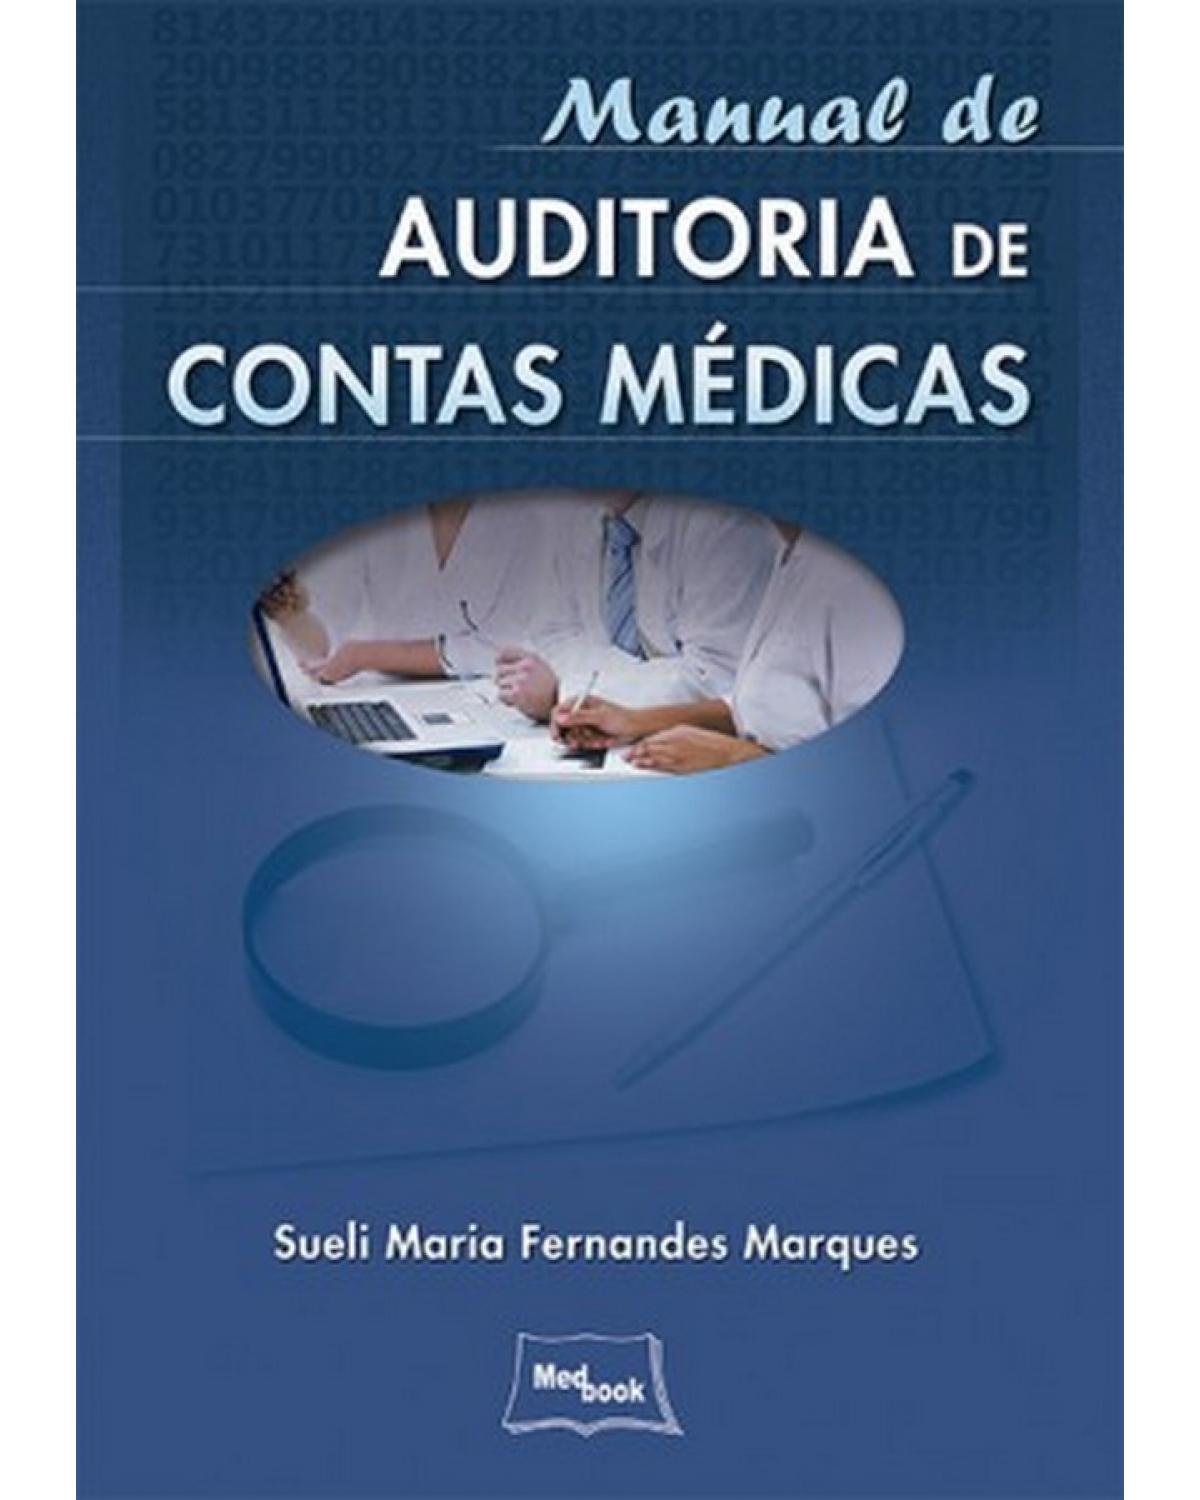 Manual de auditoria de contas médicas - 1ª Edição | 2015